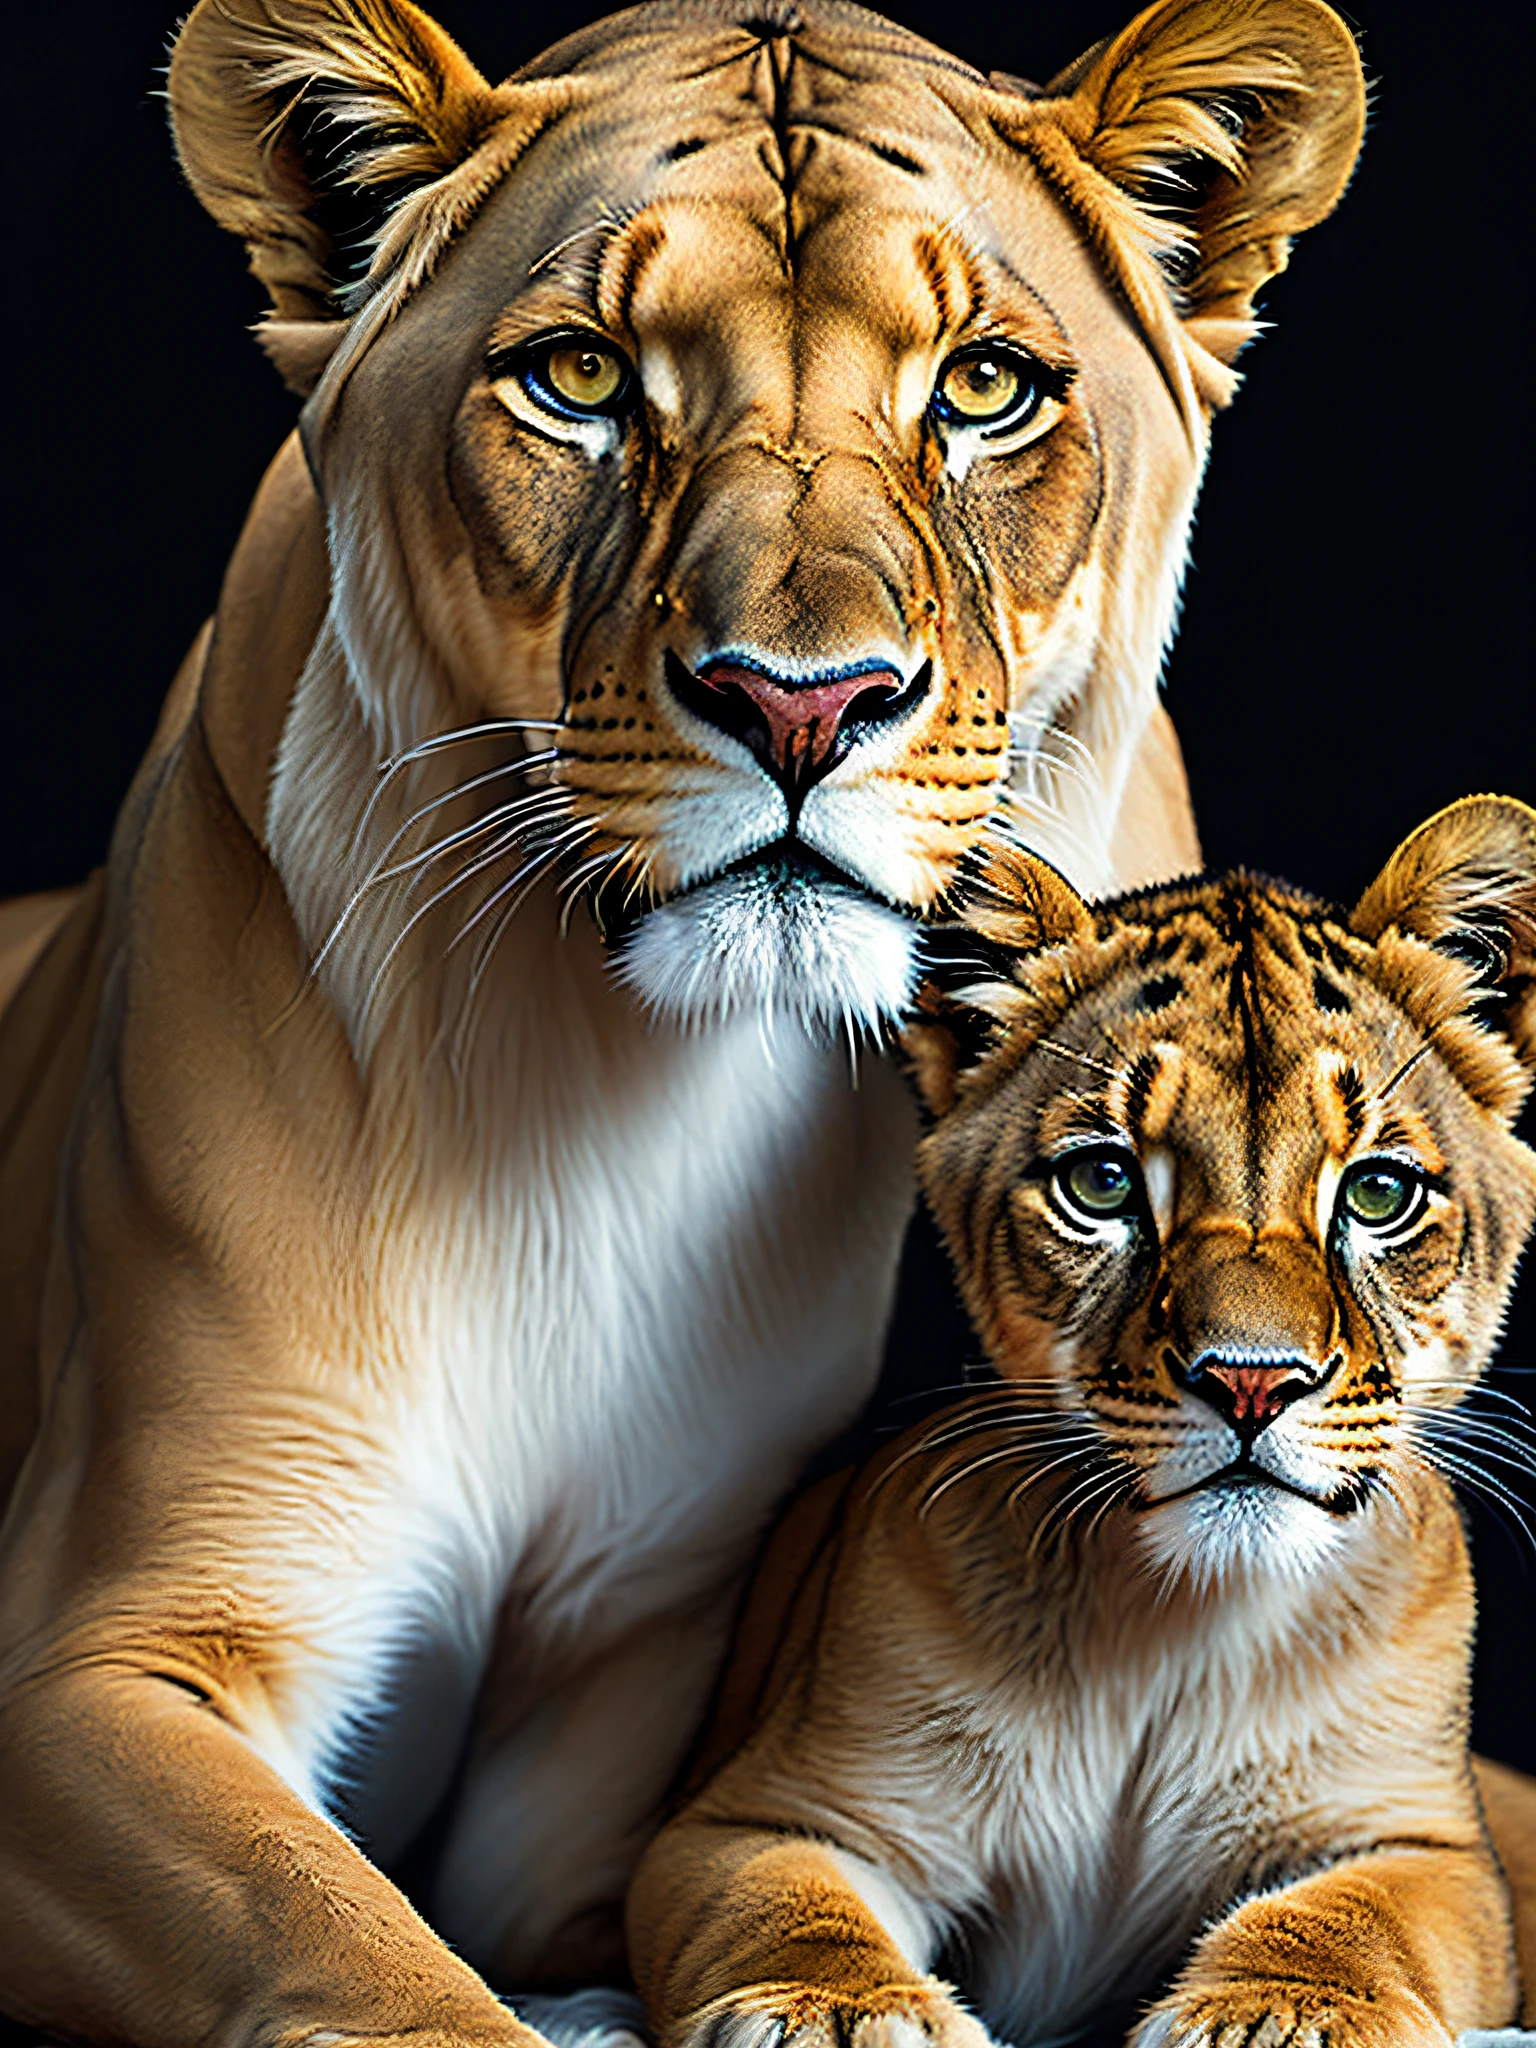 母狮和她的幼崽, 丰富多彩的, 08k, 摄影, 美丽的, 黑色背景, 杰作, 顶级品质, 最好的质量, 官方艺术, 美丽的 and aesthetic, 实际的, 纹身风格